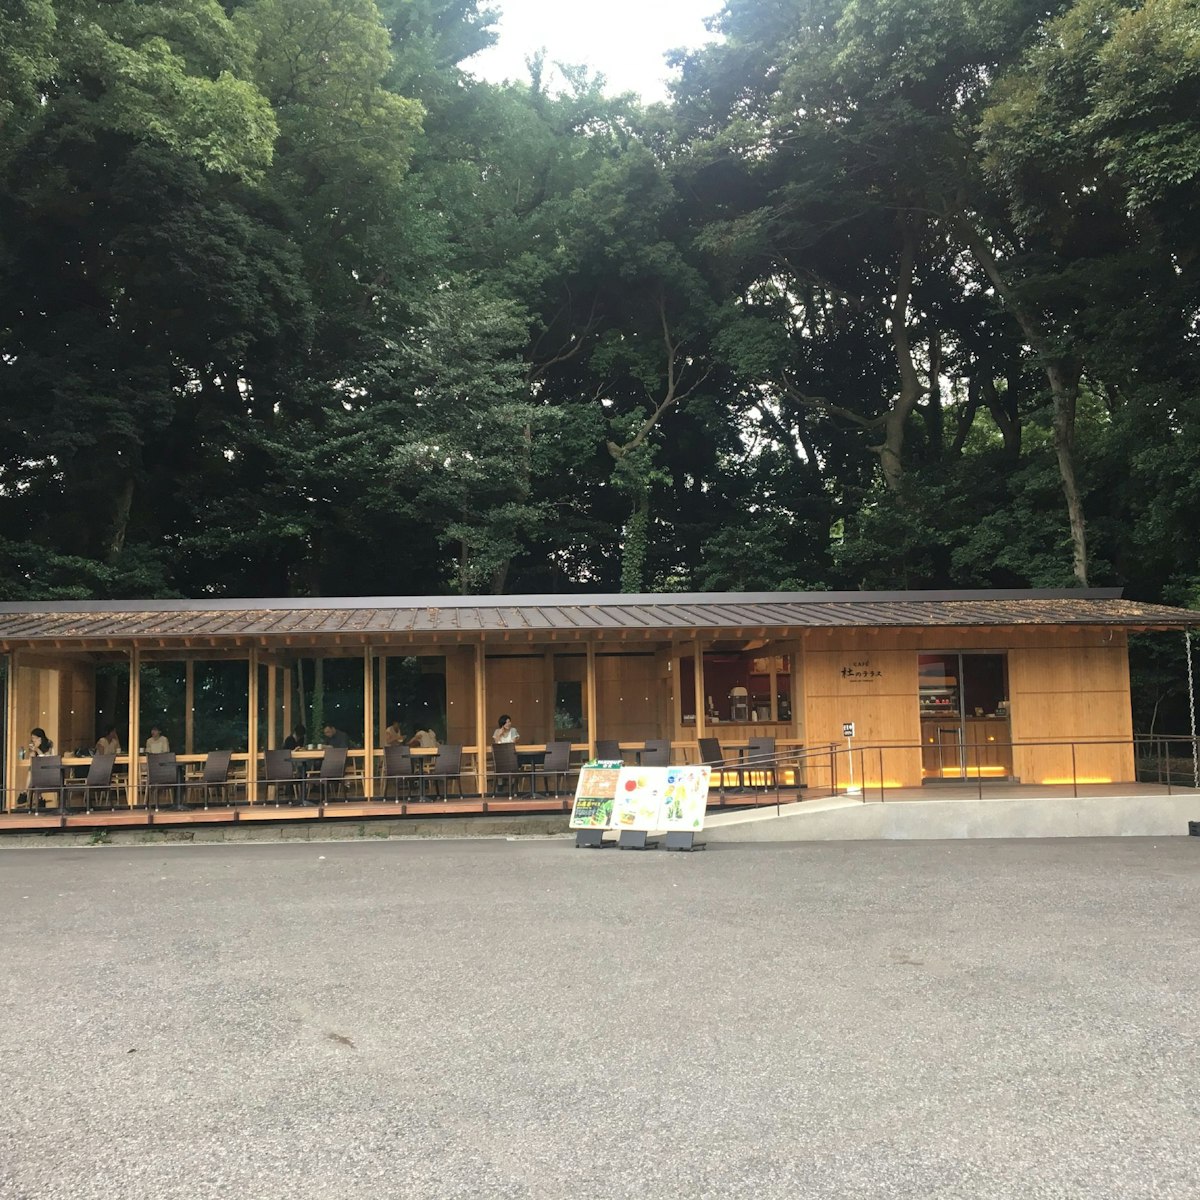 Cafe on the grounds of Meiji-jingu, Harajuku & Aoyama.